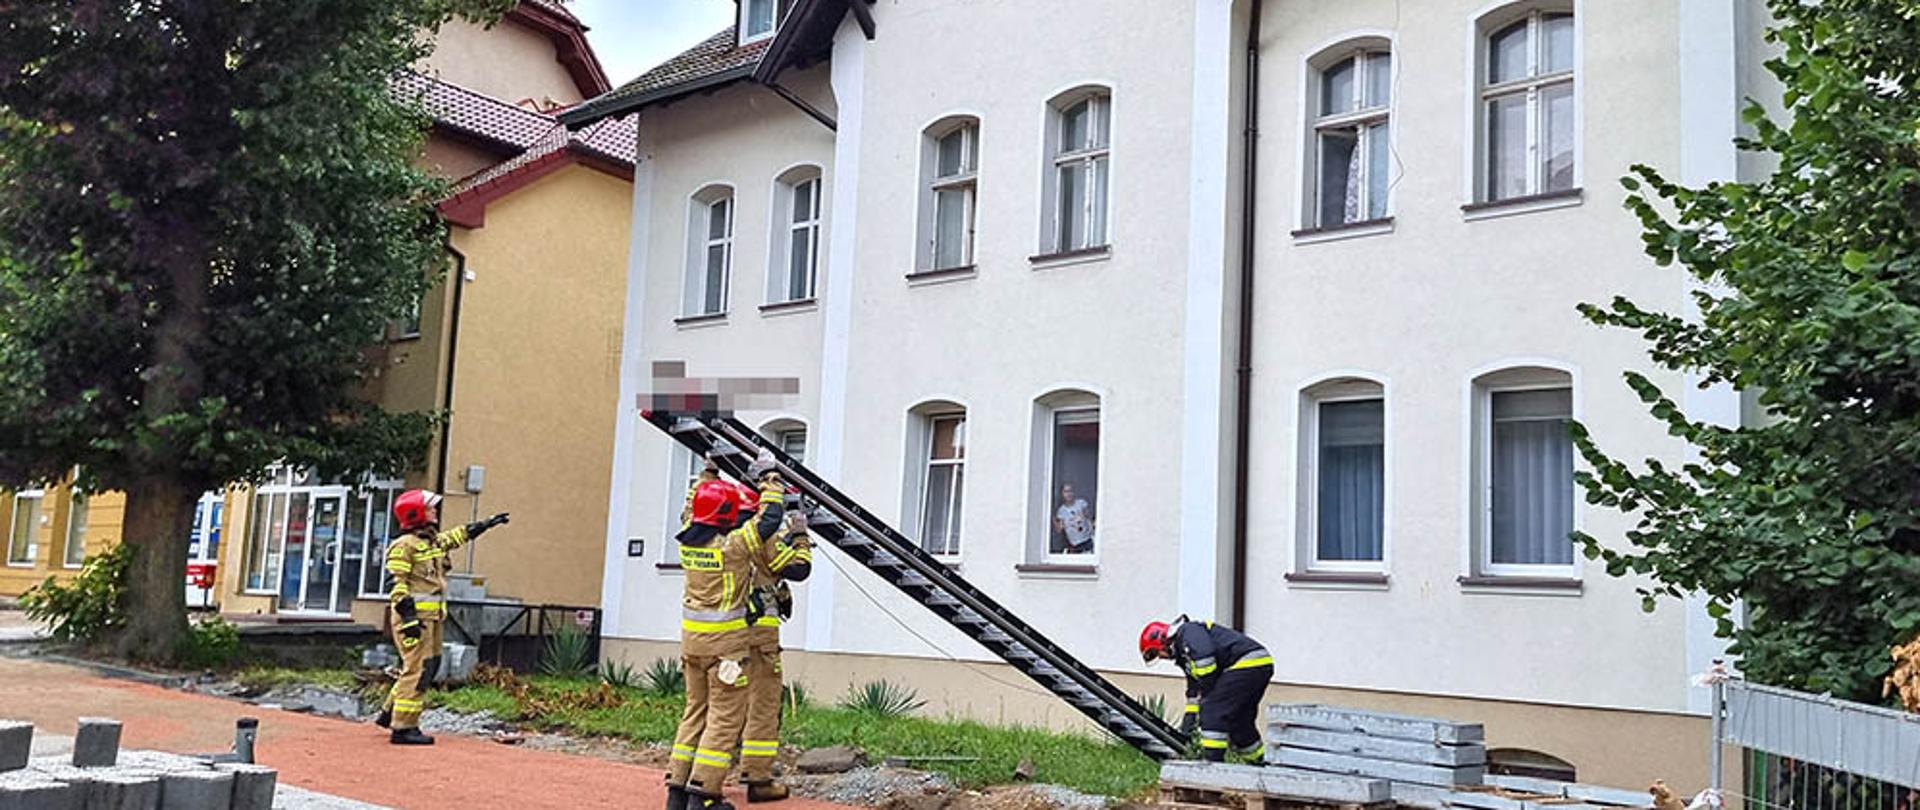 Zdjęcie przedstawia strażaków ustawiających drabinę do okna by dostać się do mieszkania